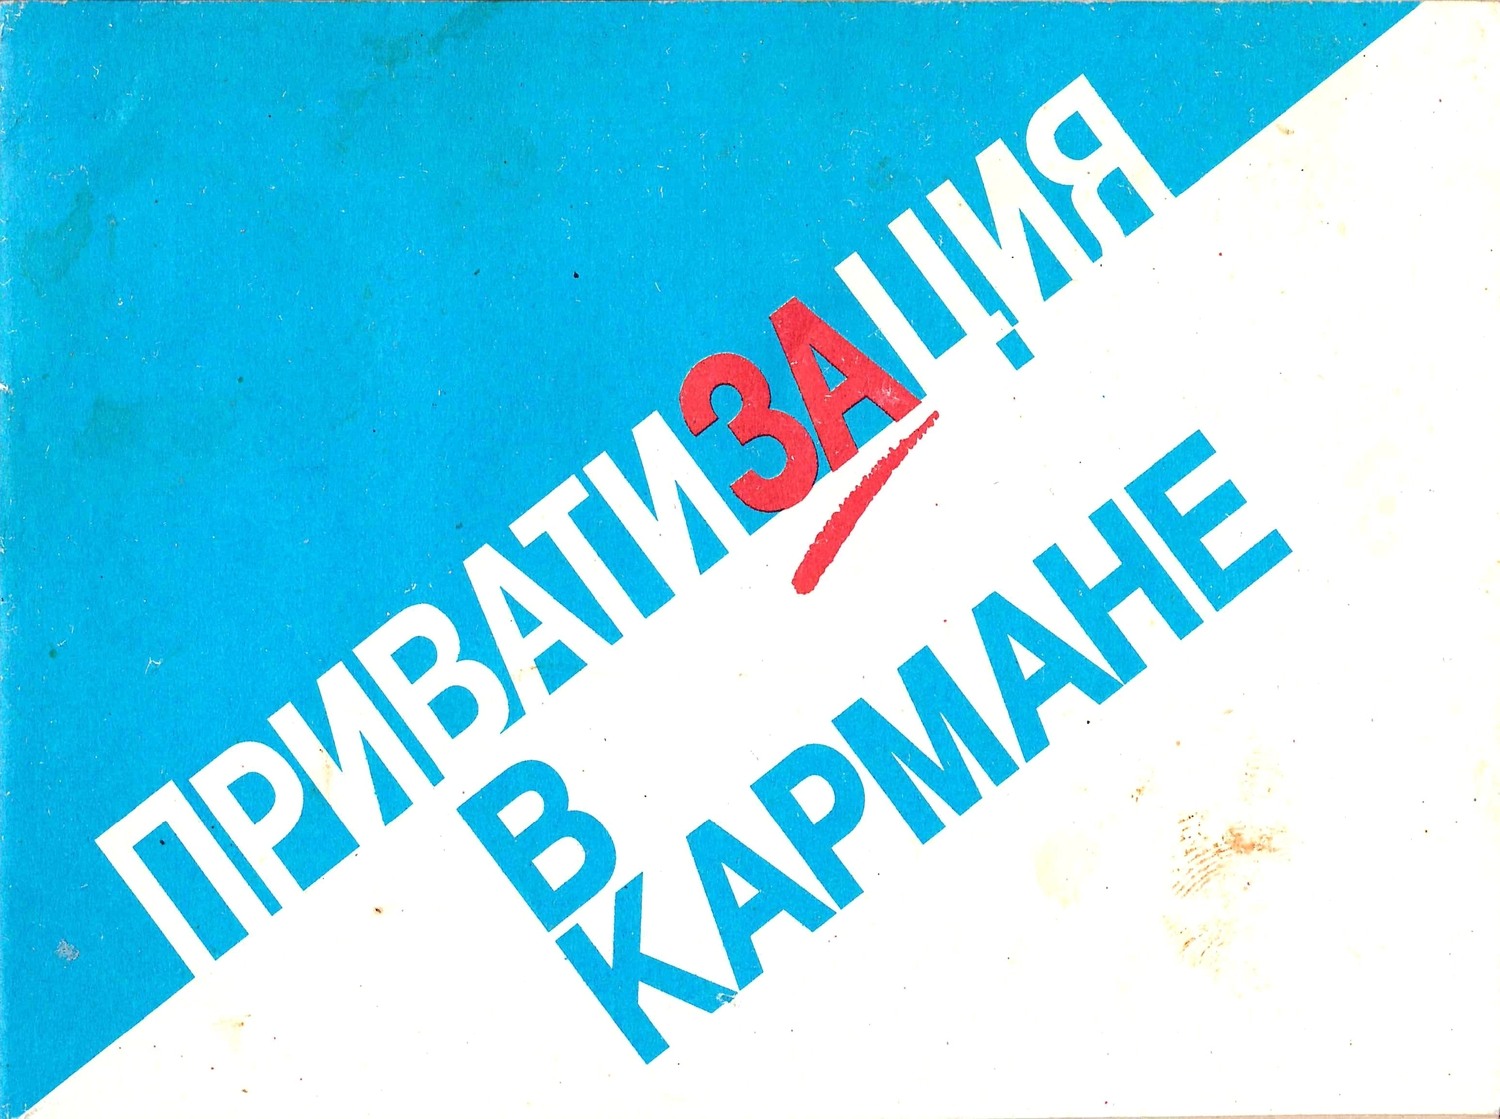 Информационный буклет «Приватизация в кармане» (Новосибирск, 1993). Карманный календарь «Приватизация» на 1993 год.